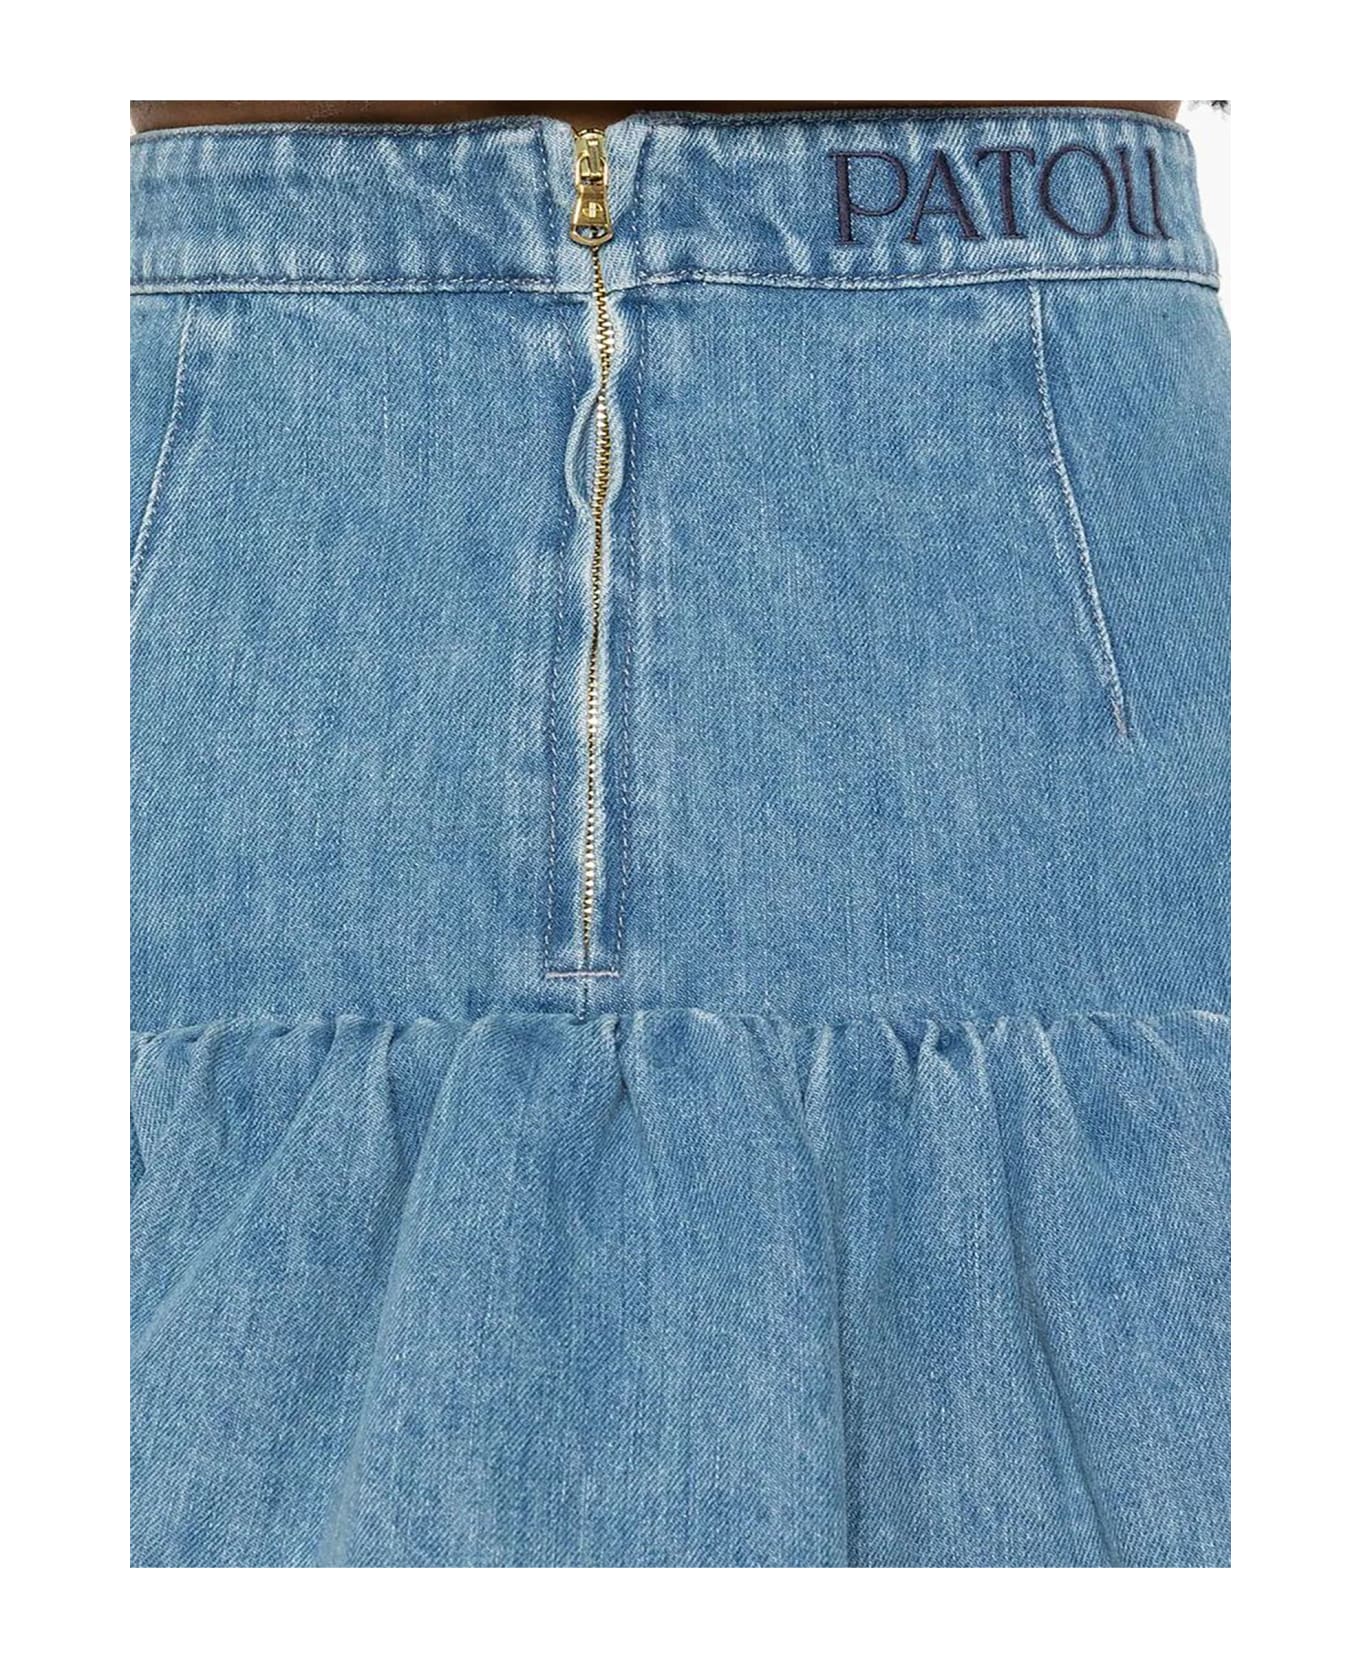 Patou Blue Cotton Blend Peplum Denim Skirt - Blue